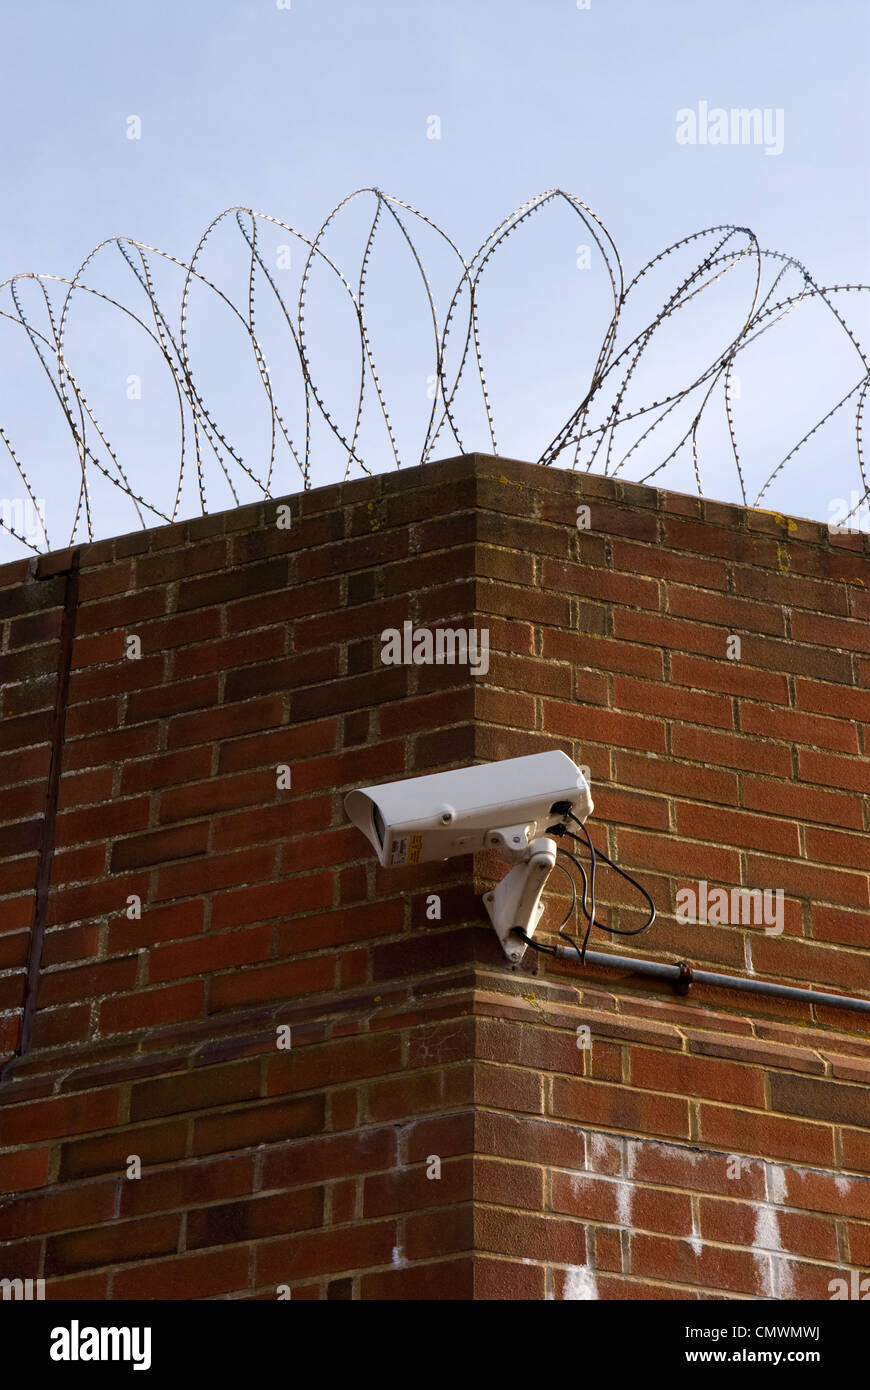 CCTV e filo spinato custodendo l'entrata principale dell'immigrazione Centro di rimozione a Haslar, Gosport, Hampshire, Regno Unito. Foto Stock